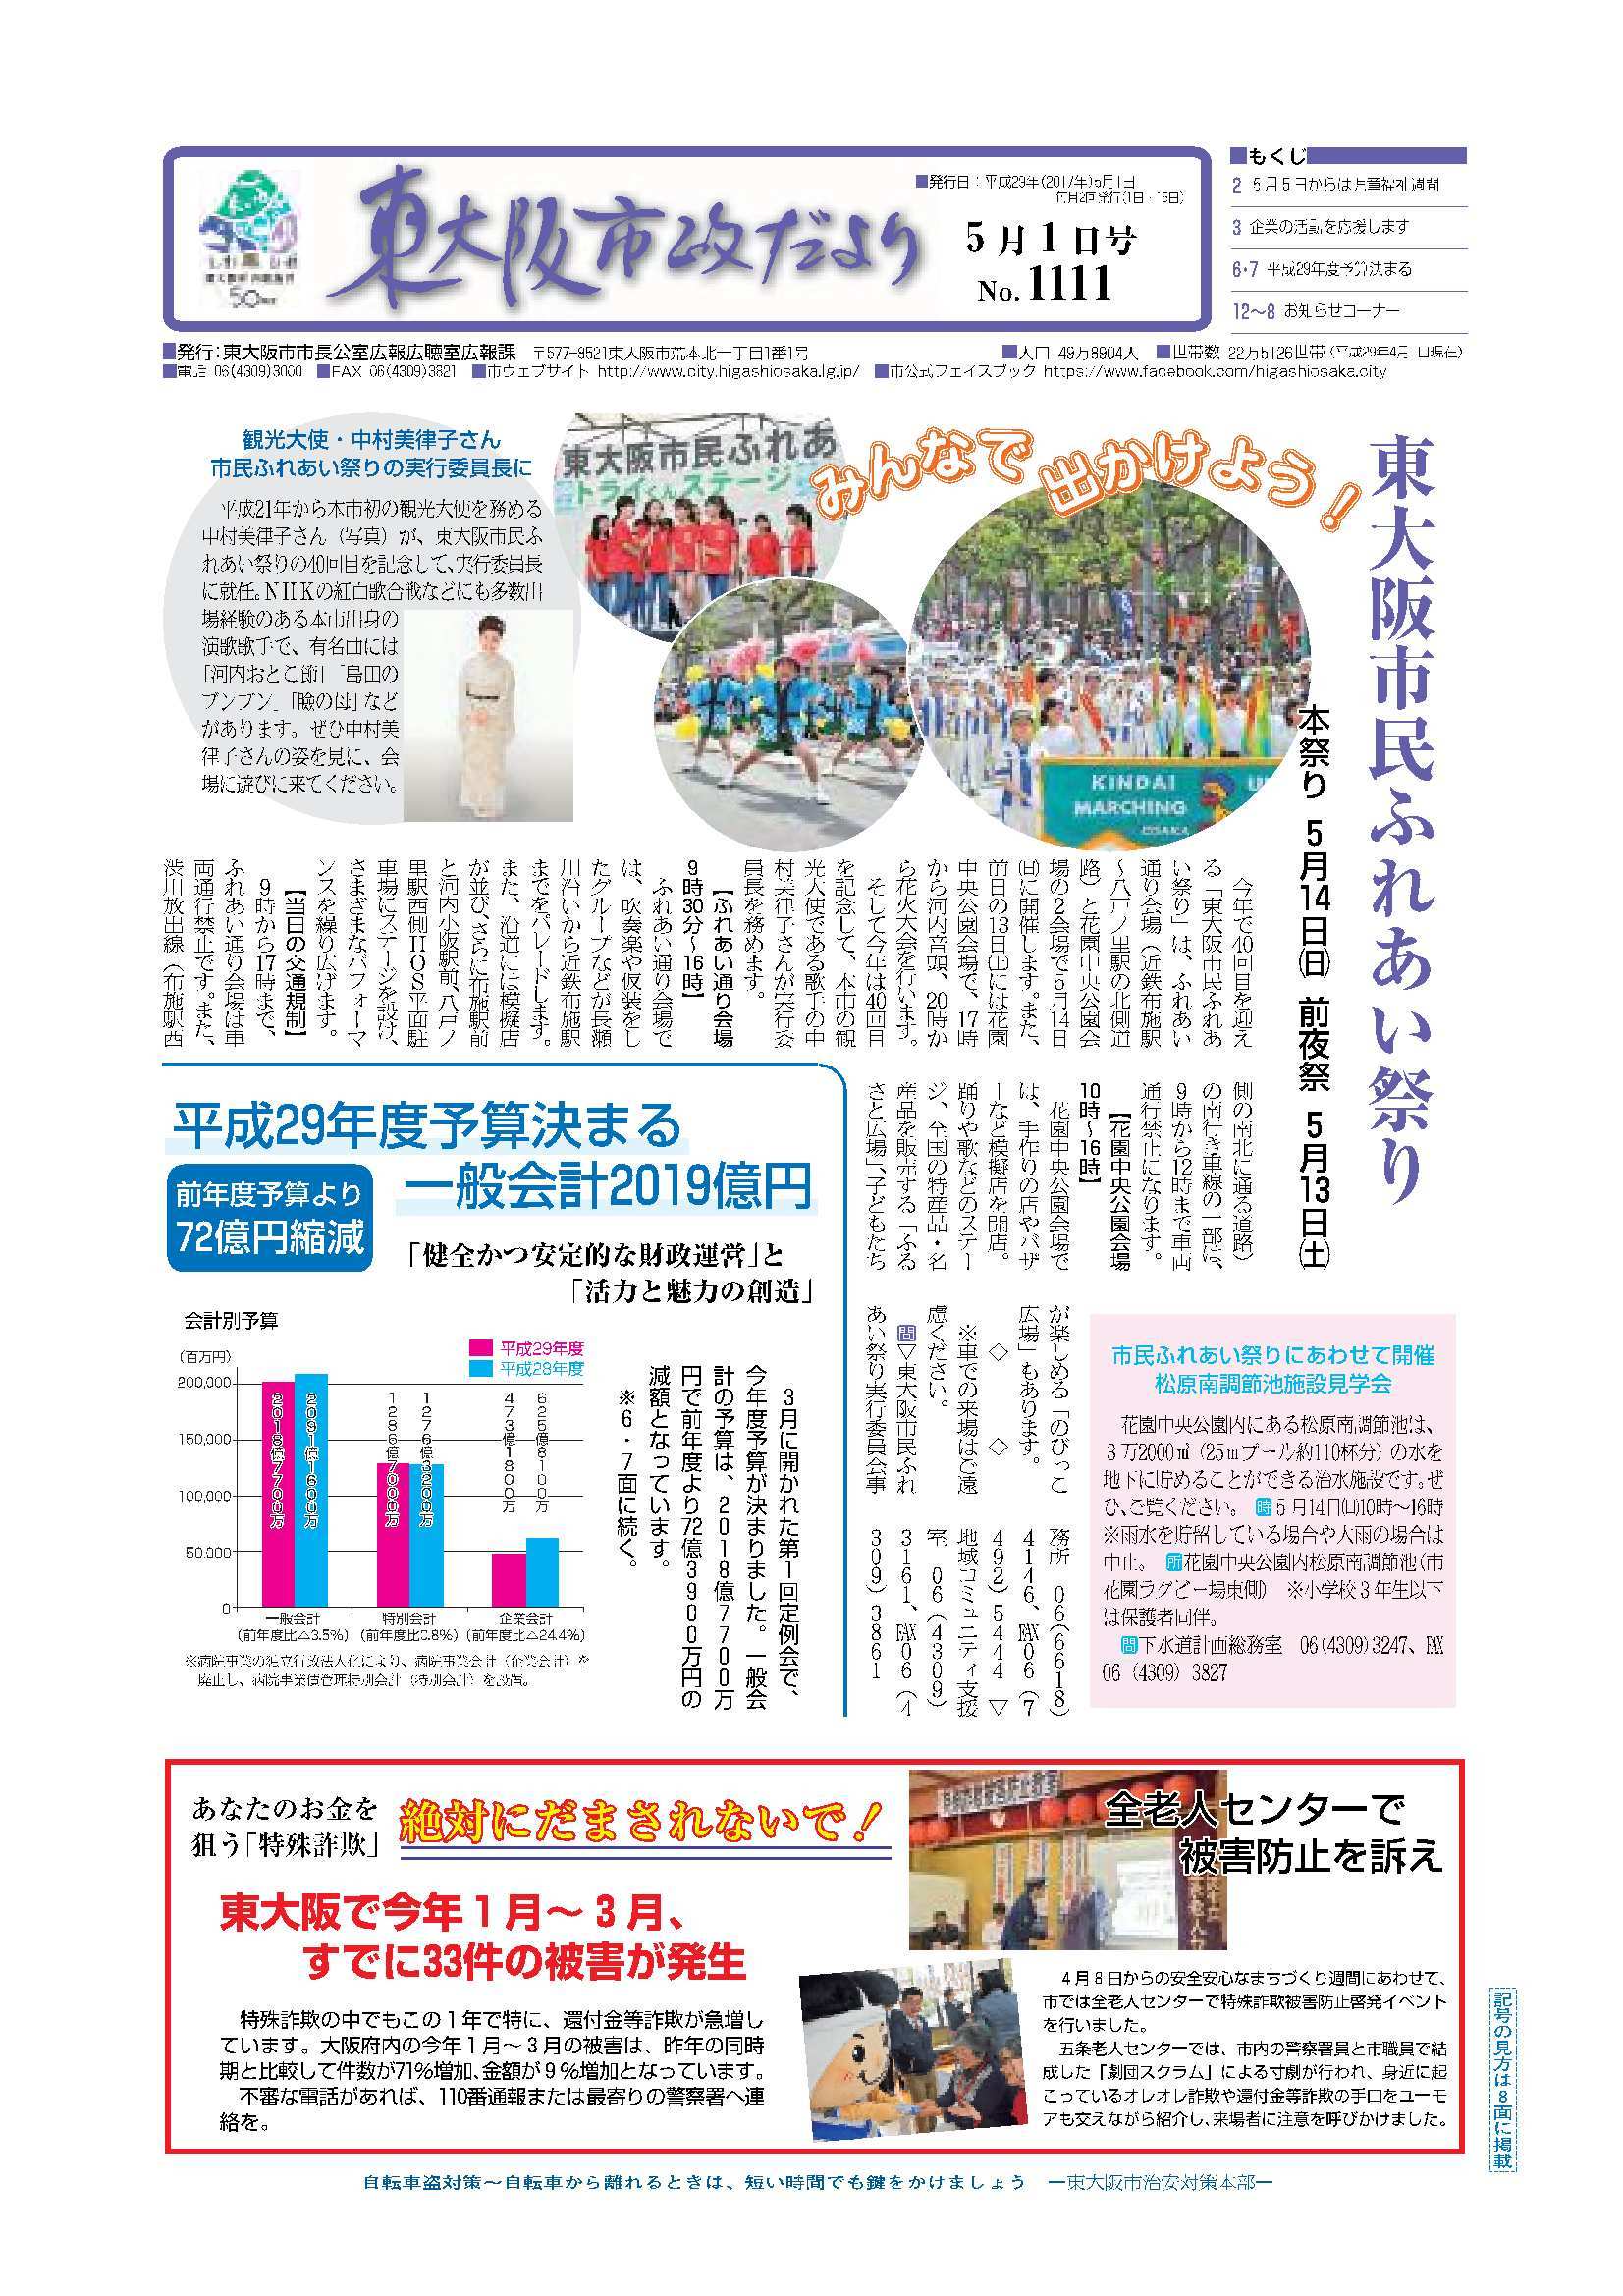 平成29年(2017)5月1日号の表紙